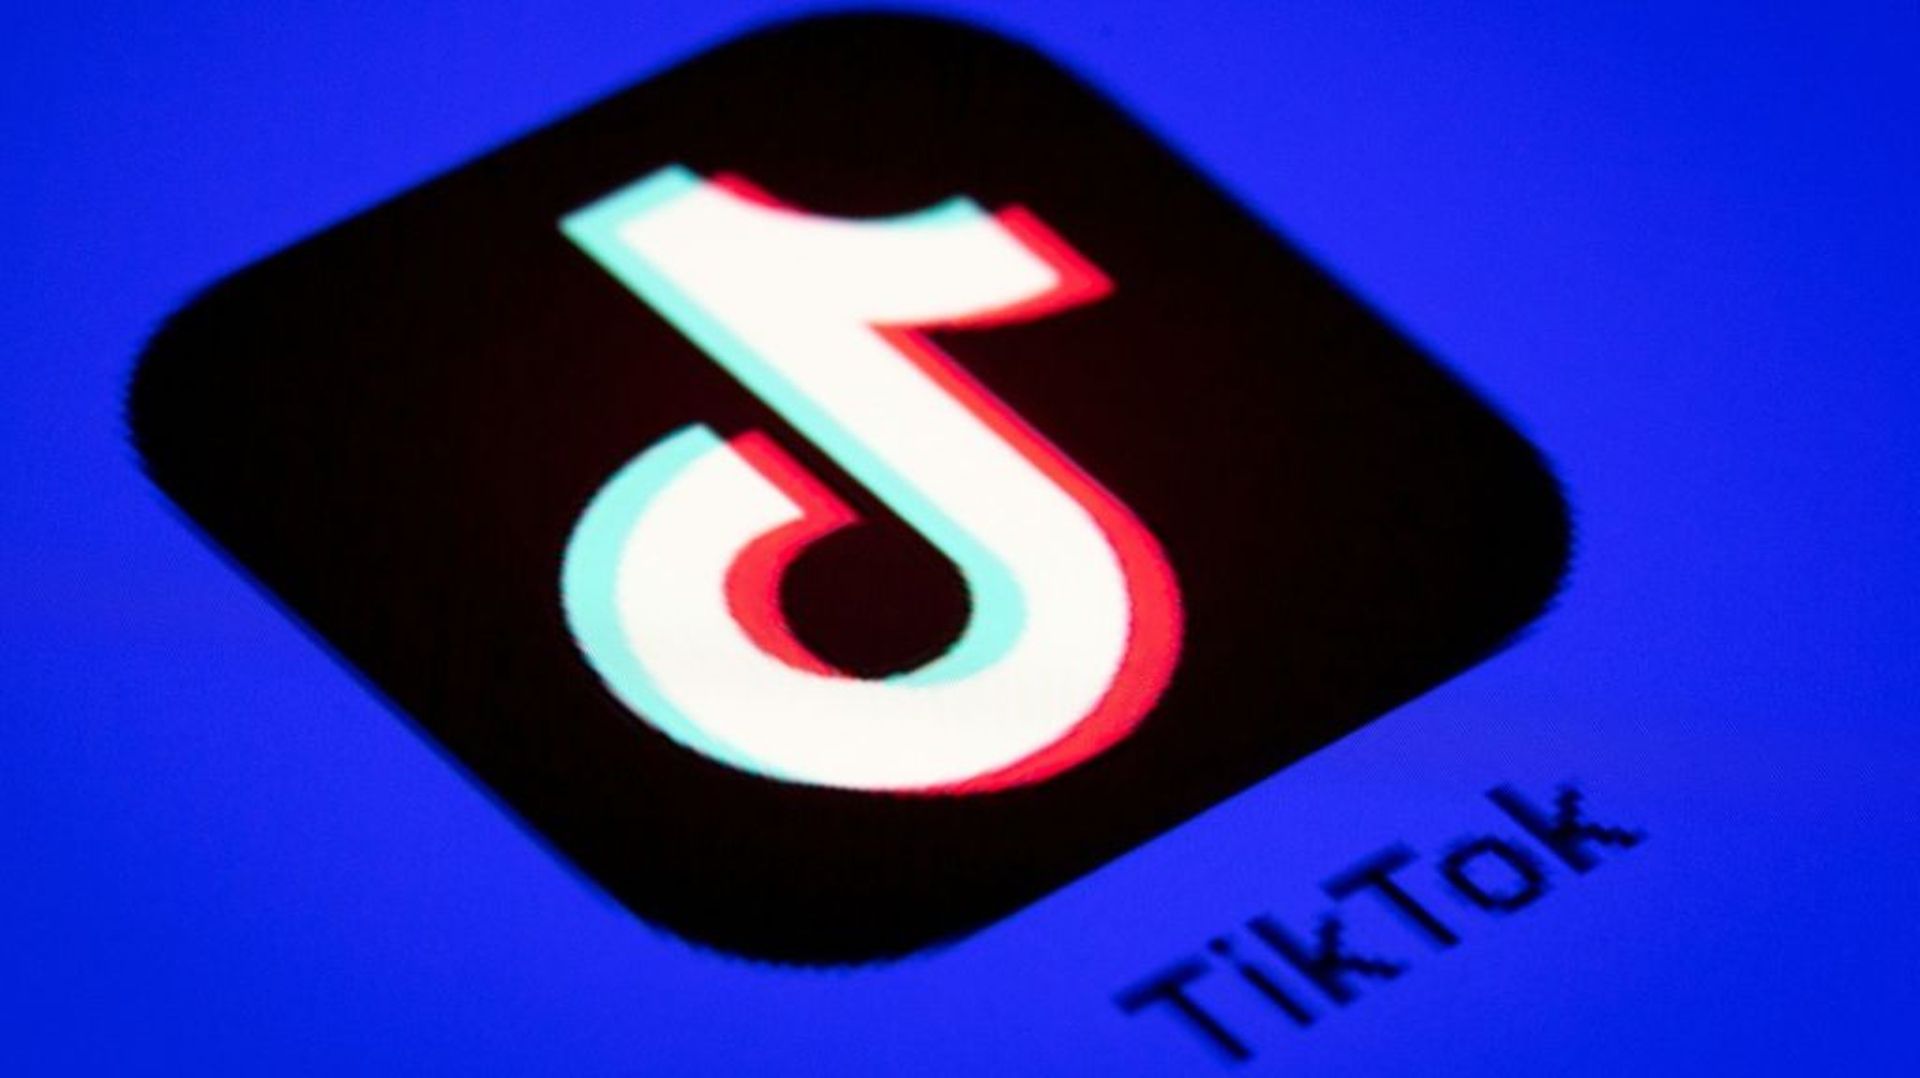 TikTok souhaite se coordonner avec neuf autres géants des réseaux sociaux pour identifier et retirer rapidement des plateformes des images ultra-violentes, dont celles de suicide